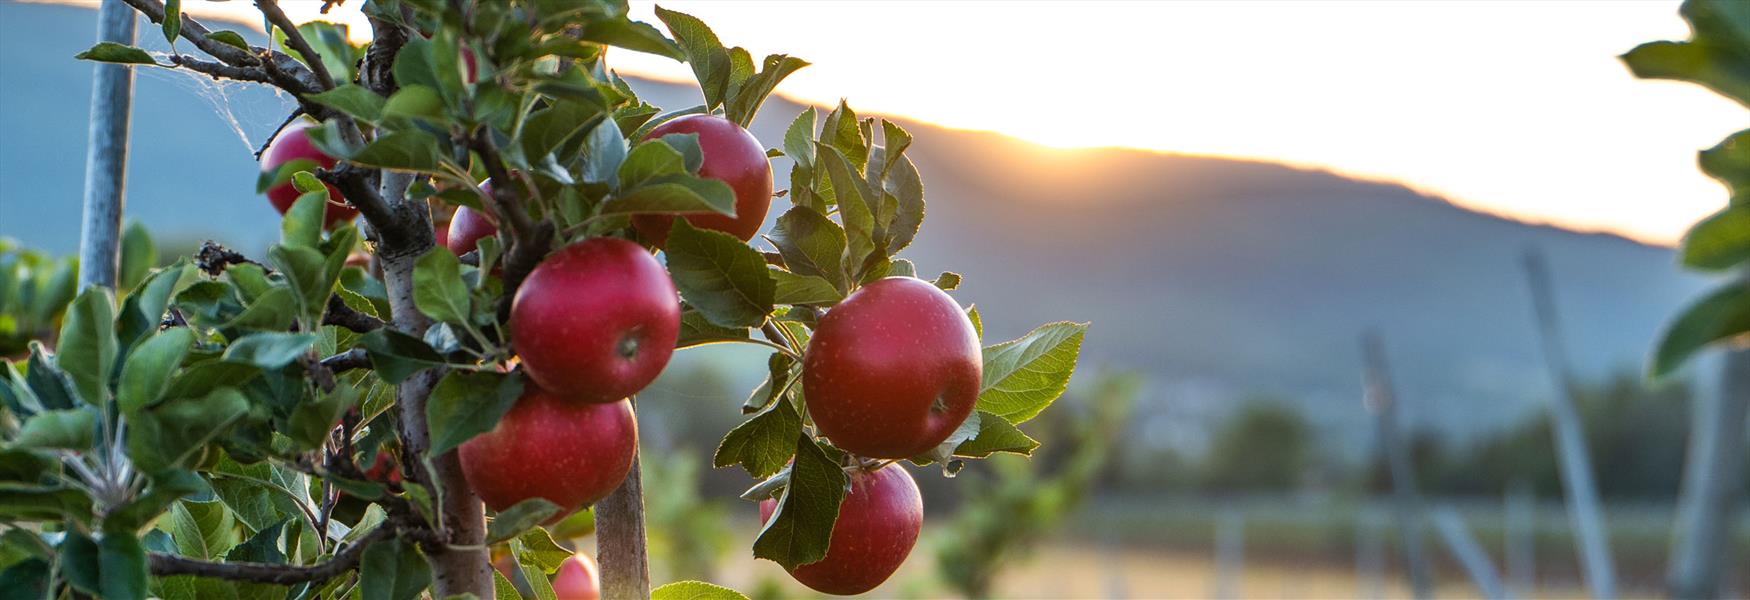 epler på treet i fruktbygda i Telemark